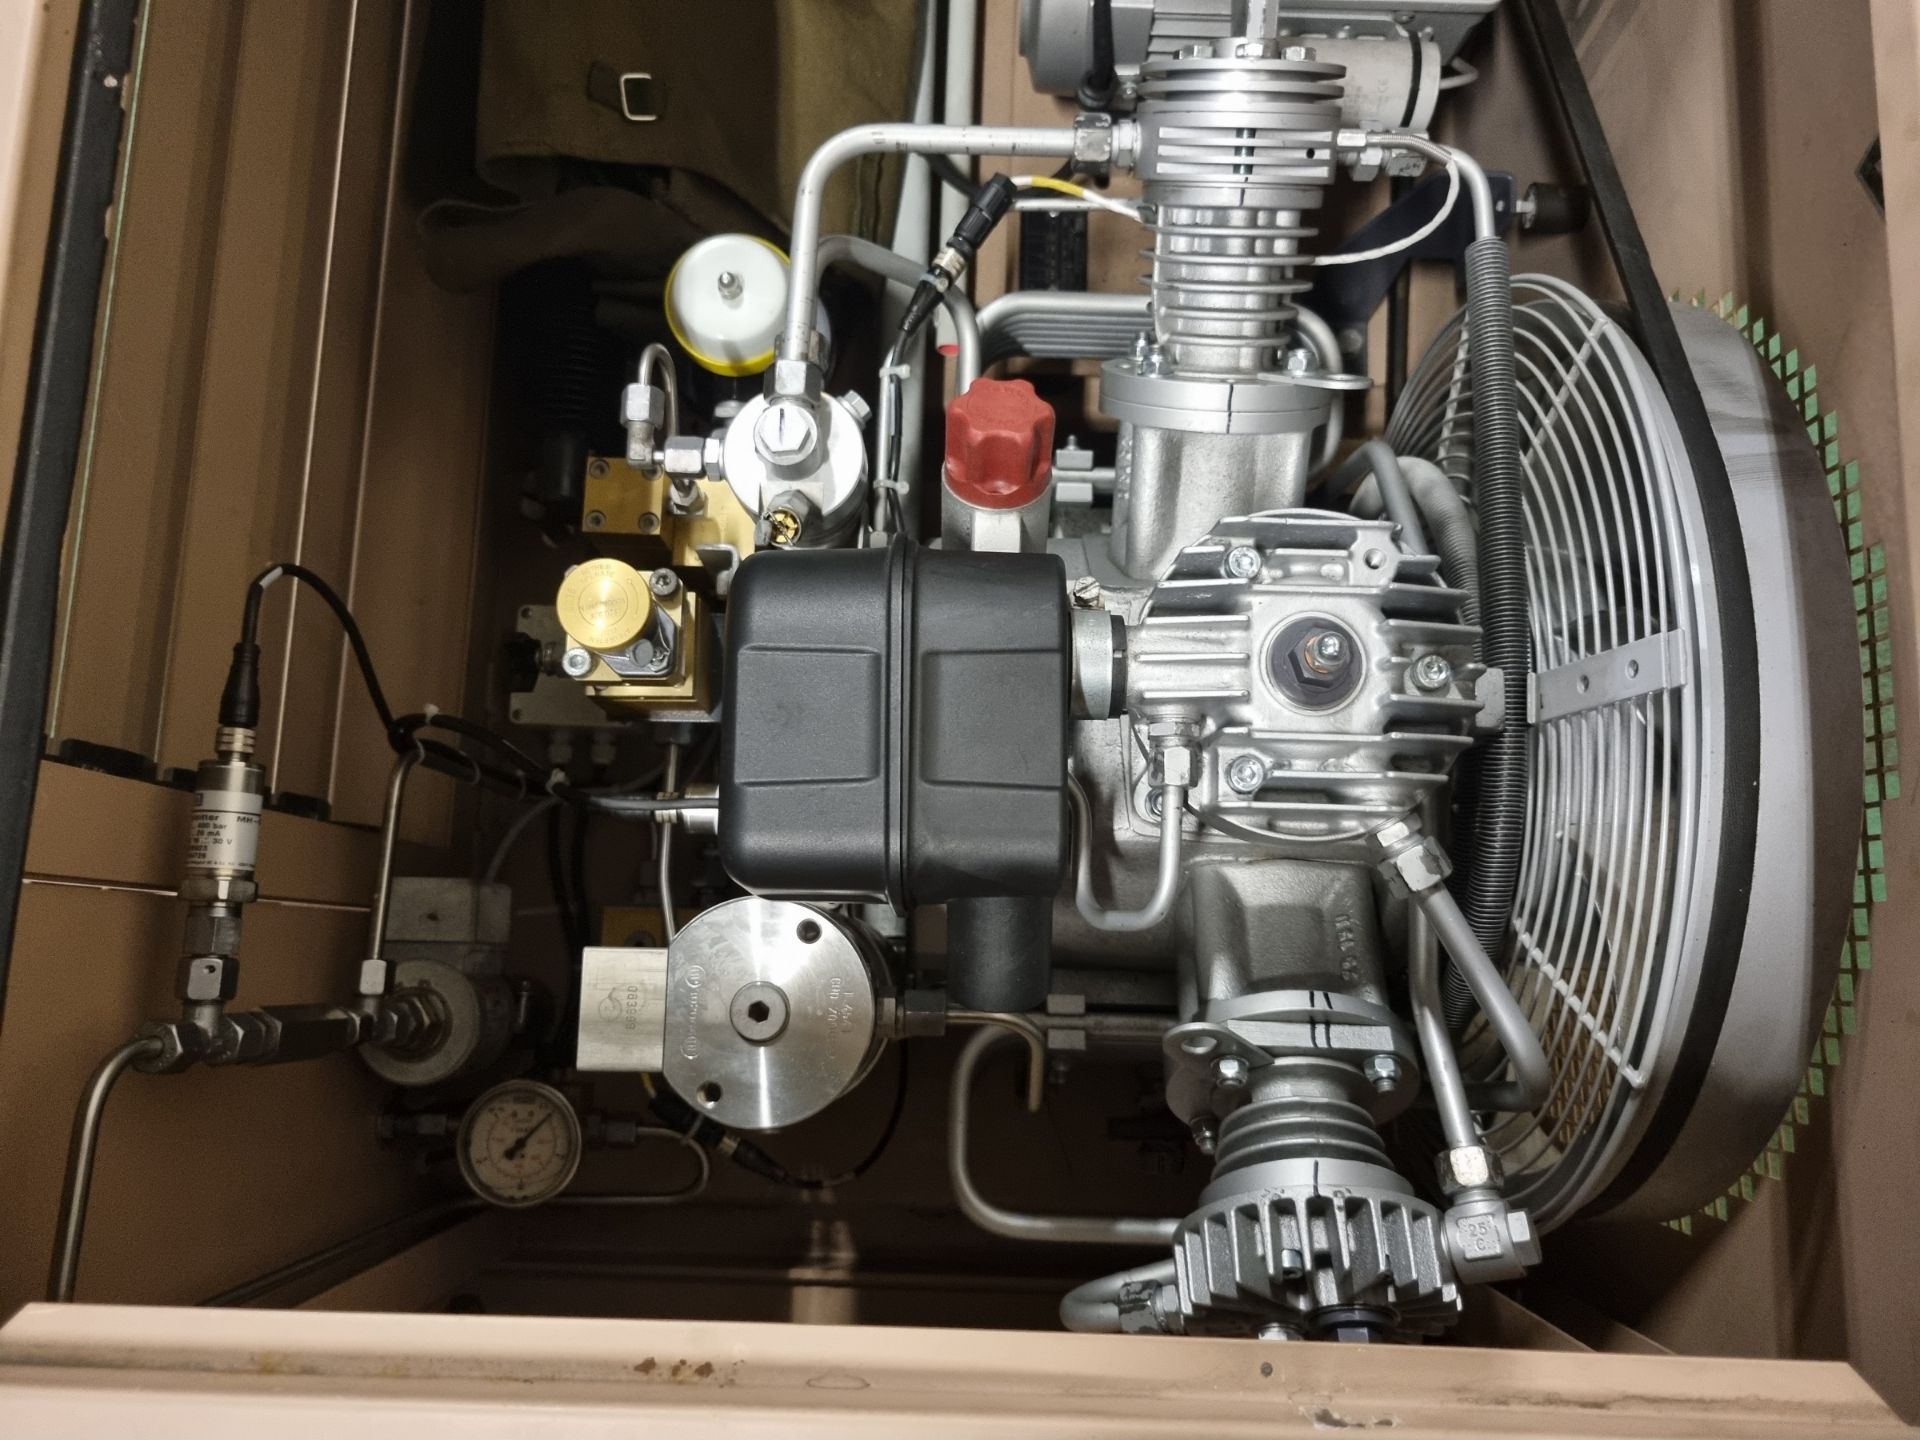 Bauer Compressor unit, Bauer cylinder refill system - see description for details - Image 13 of 16